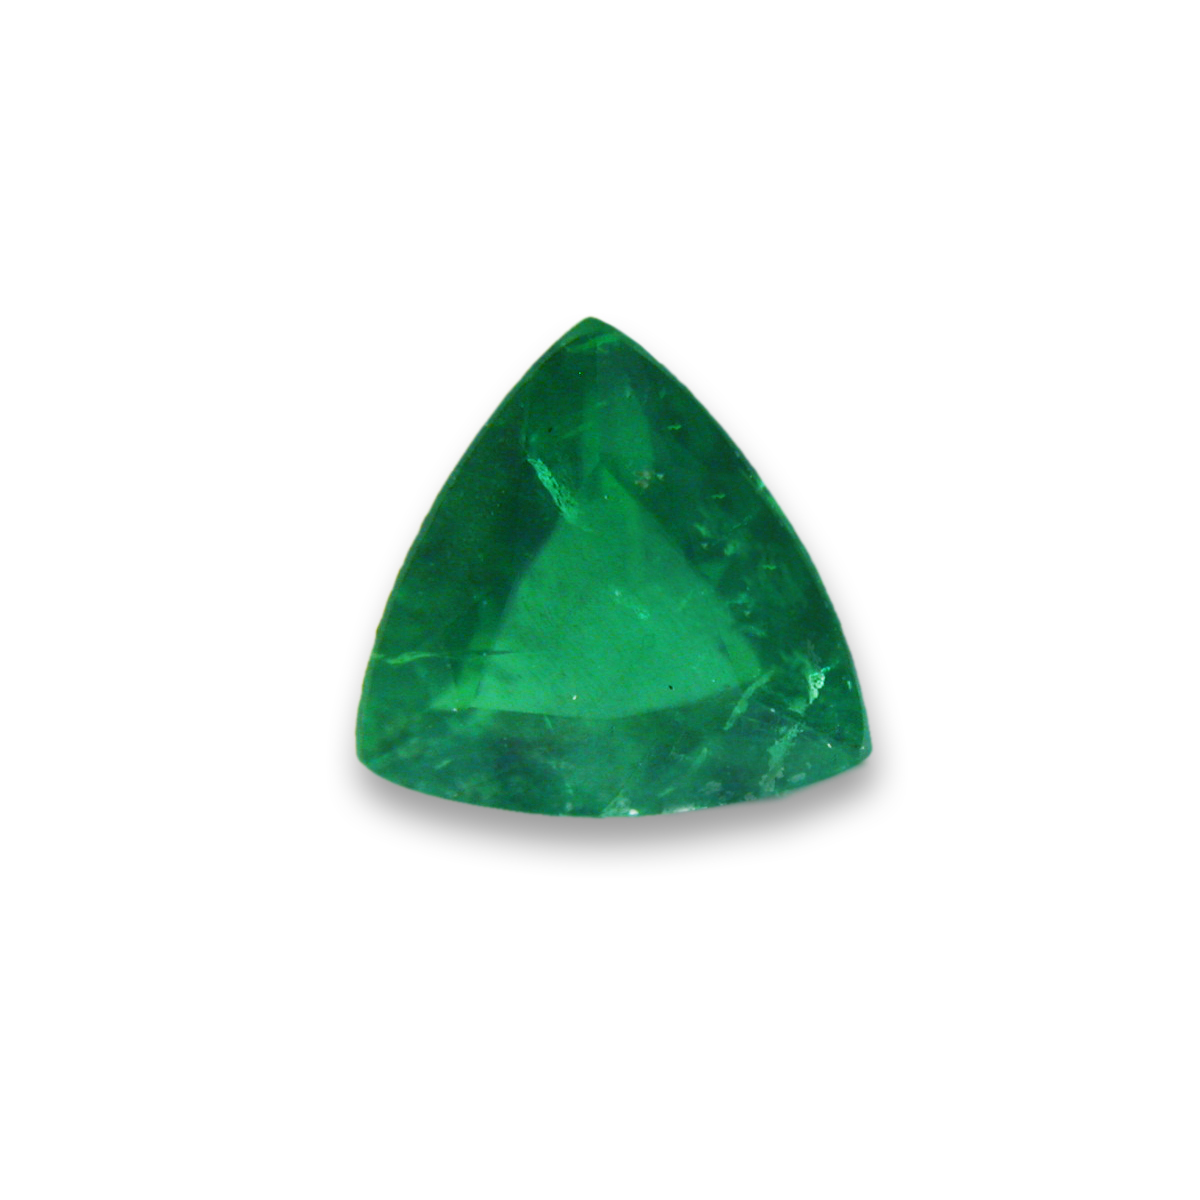 Loose Trillion Green Emerald - EMtrl001a.jpg